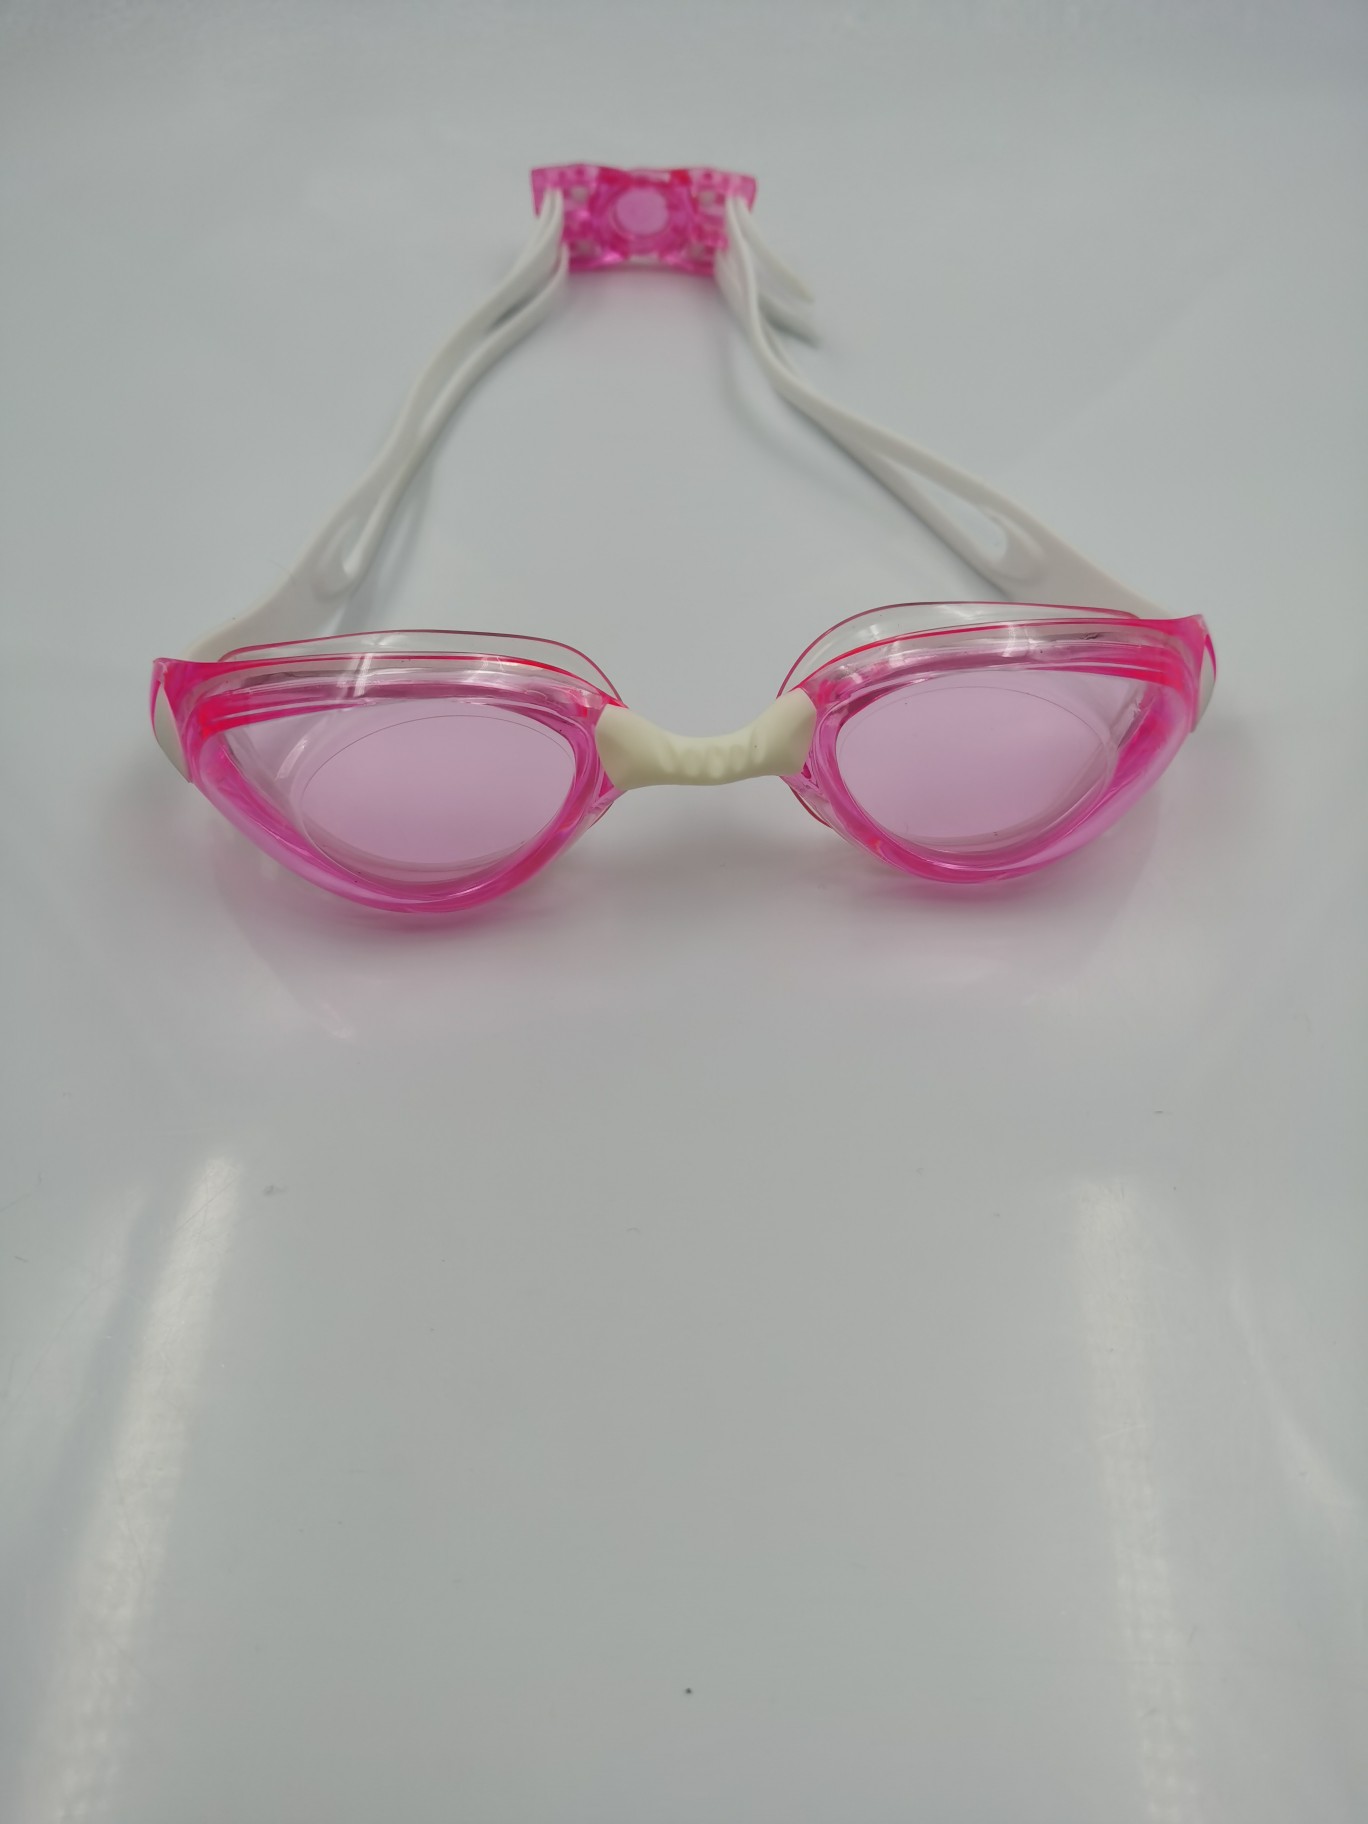 成人泳镜硅胶可调节头带防雾防紫外线男女通用游泳装备产品图